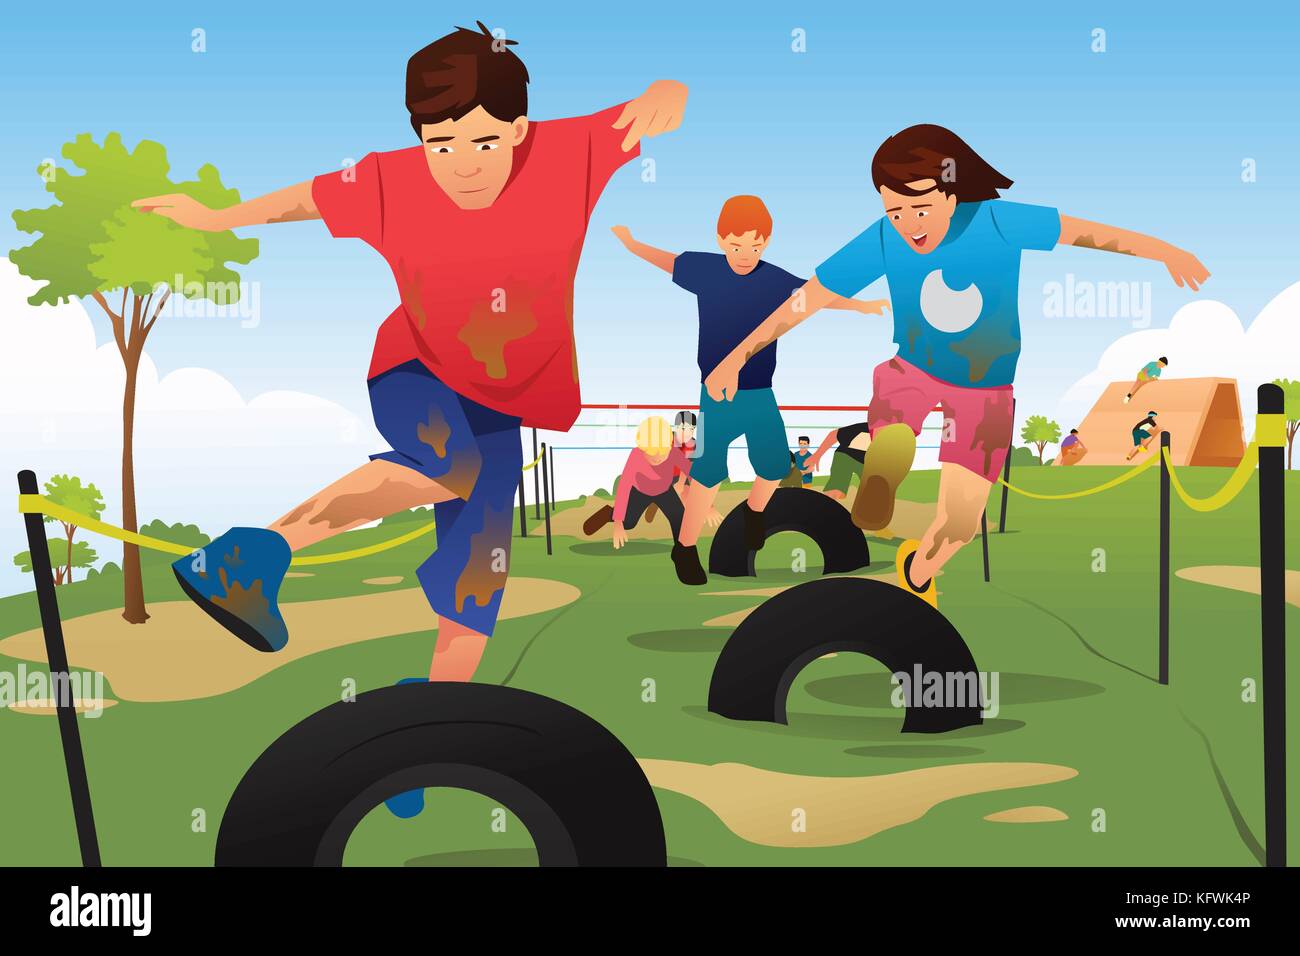 Ein Vektor Illustration der Kinder in einem Hindernis Lauf Wettbewerb konkurrieren Stock Vektor